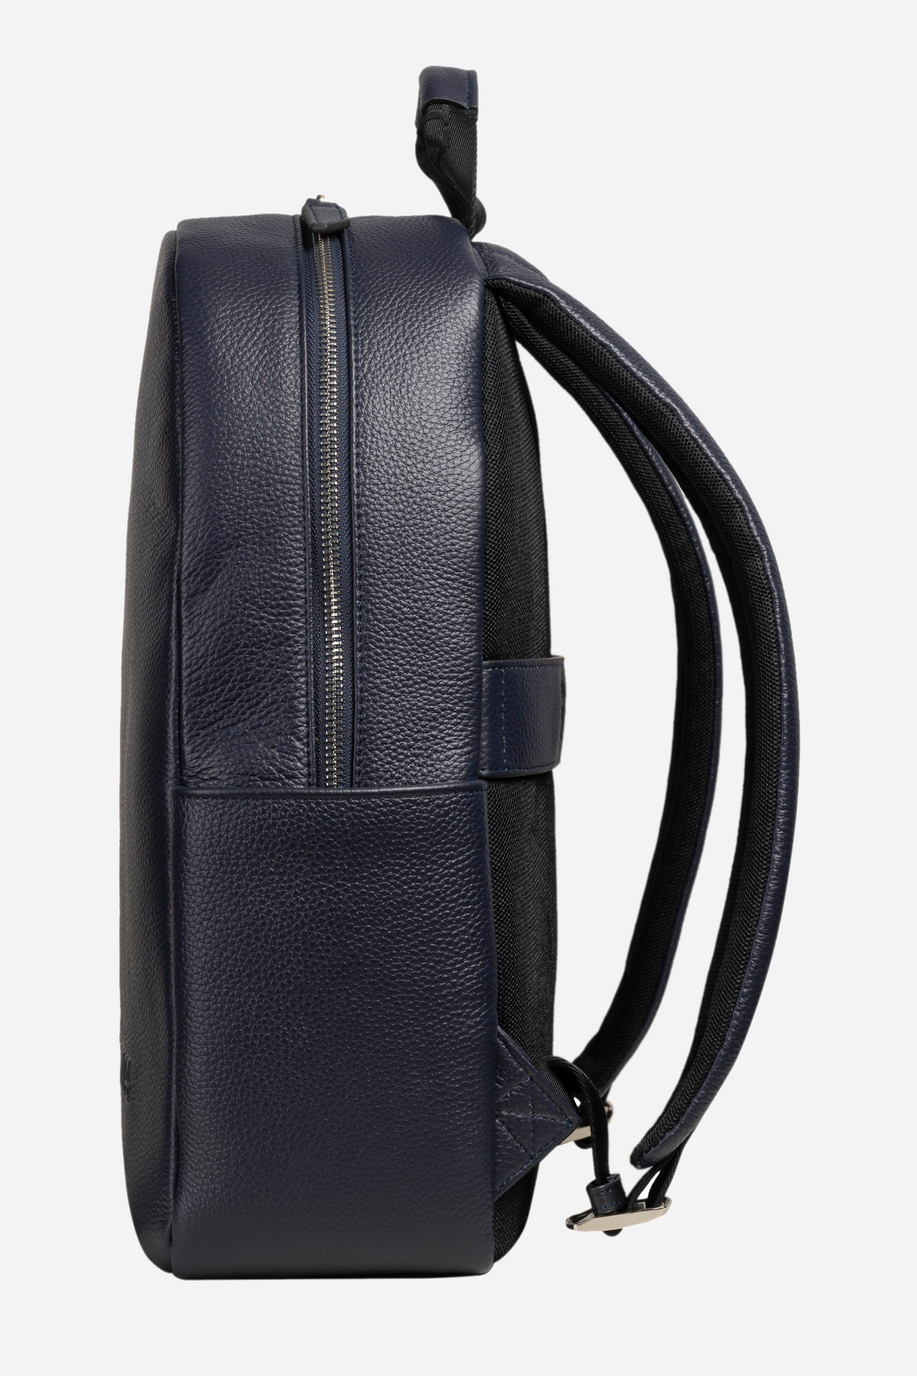 Men's leather backpack - Lorenzo - Backpacks | La Martina - Official Online Shop